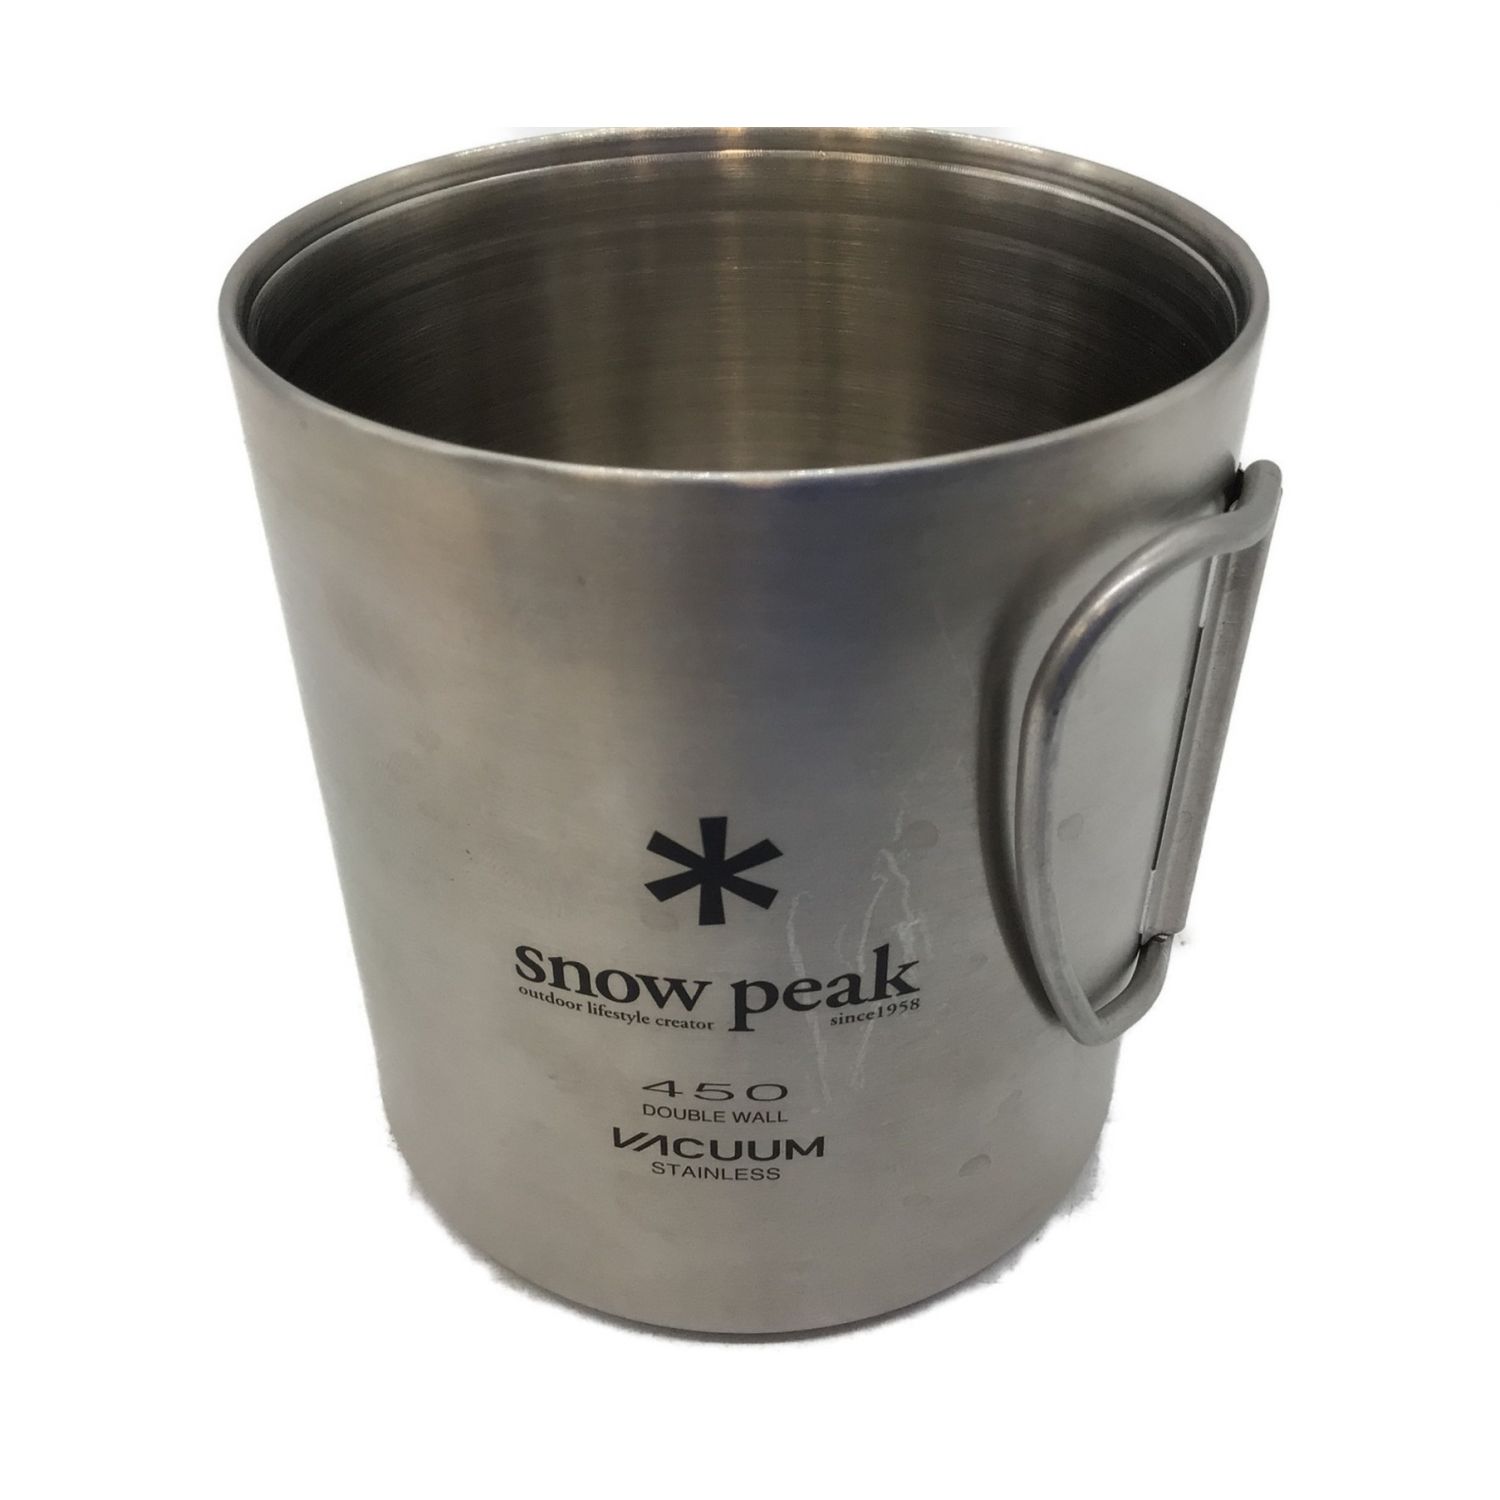 Snow peak (スノーピーク) アウトドア食器 在庫品薄品 MG-214